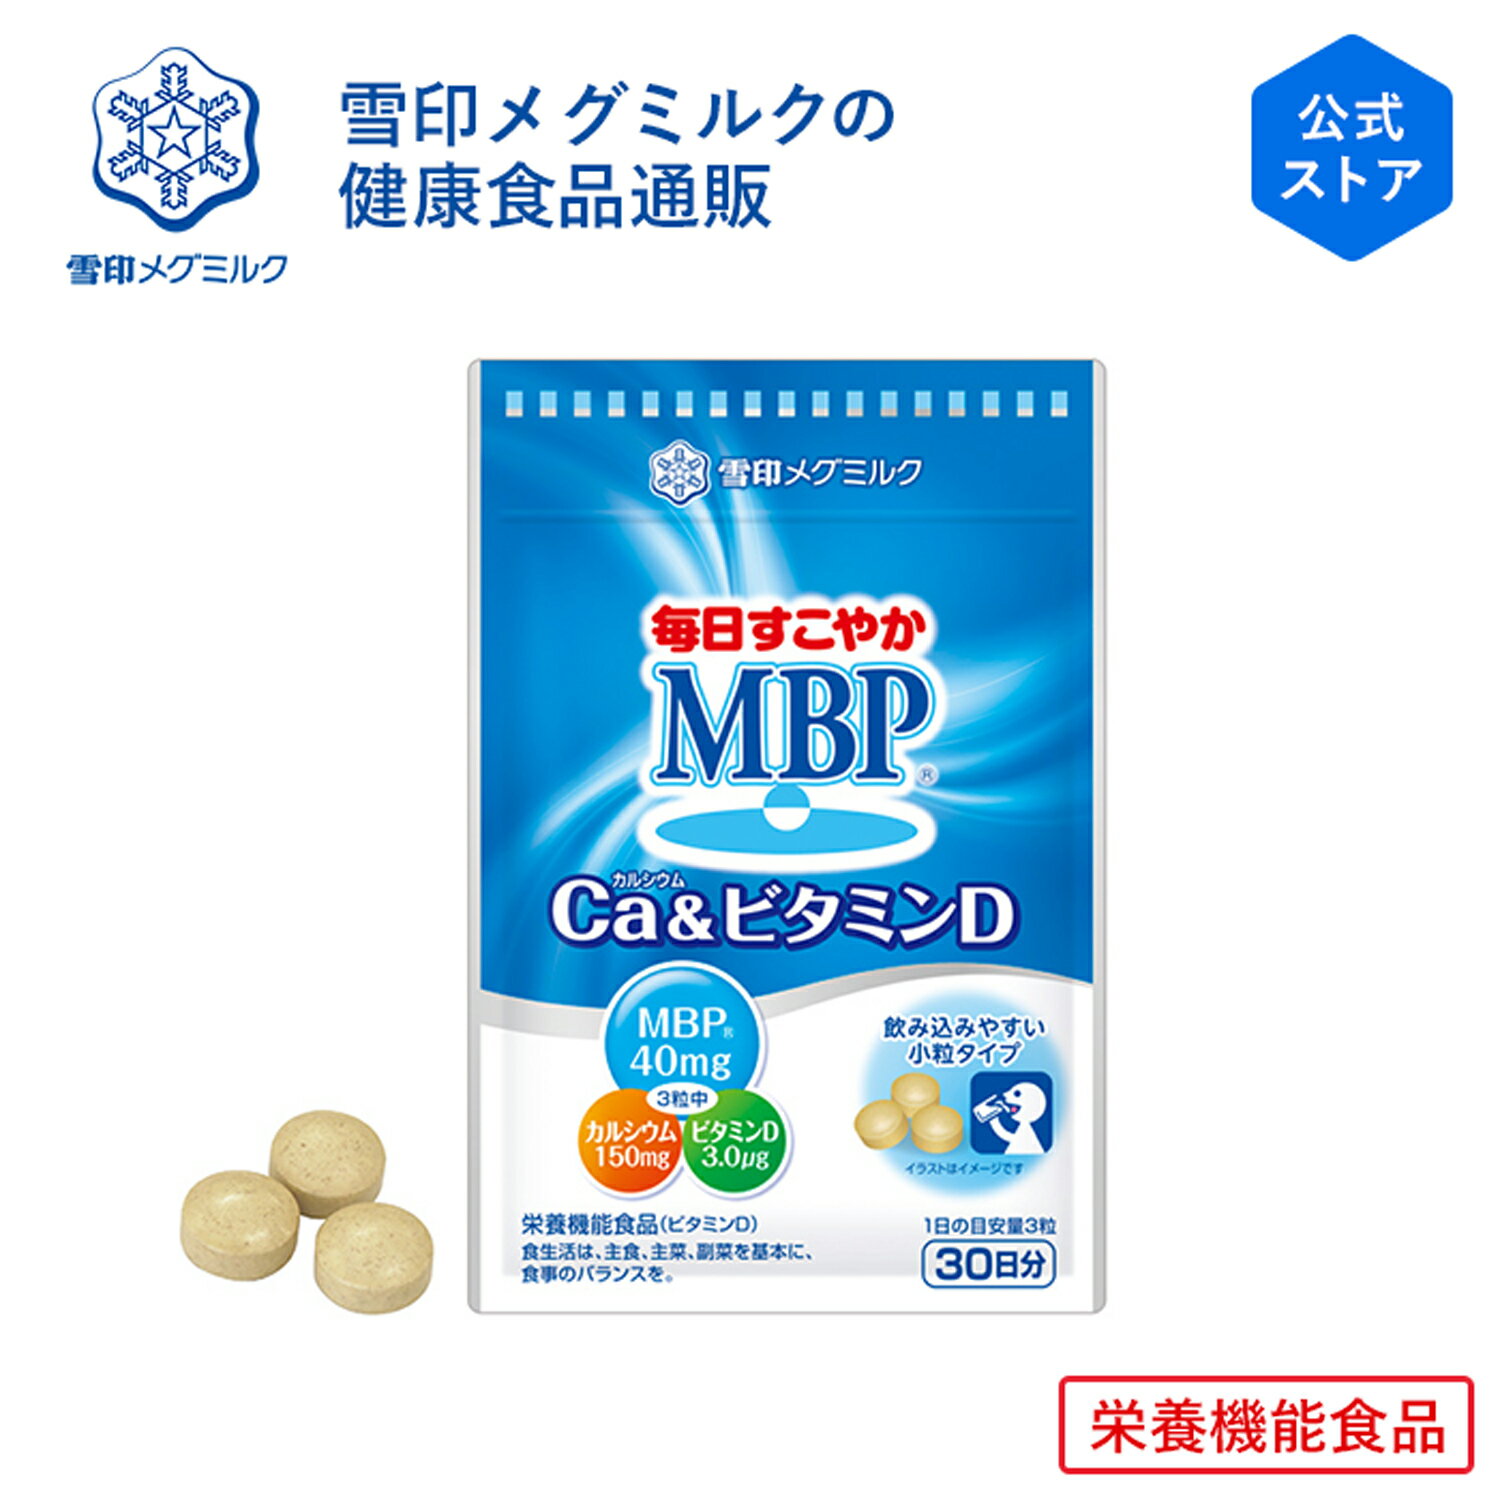 【公式】毎日すこやか MBP(R) Ca & ビタミンD 90粒 30日分 雪印 メグミルク 栄養機能食品 サプリメント サプリ カル…